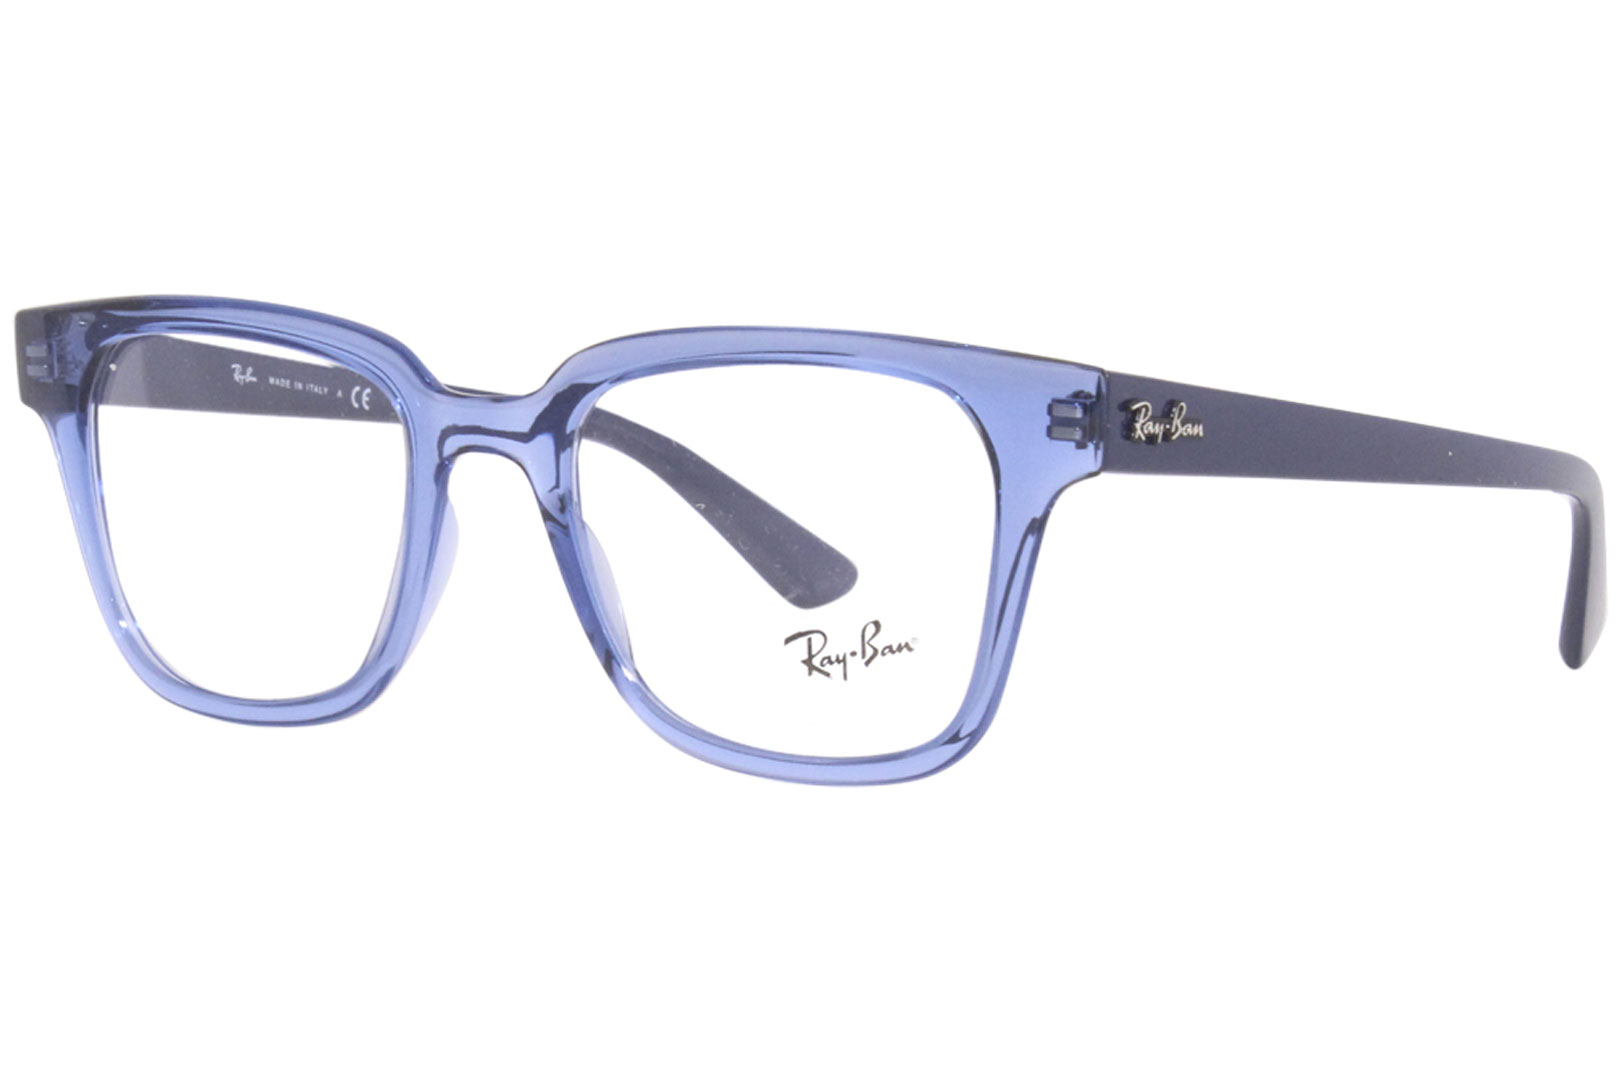 Ray Ban Eyeglasses Frame Men's RX4323-V 5941 Transparent Blue 51-20-150 |  